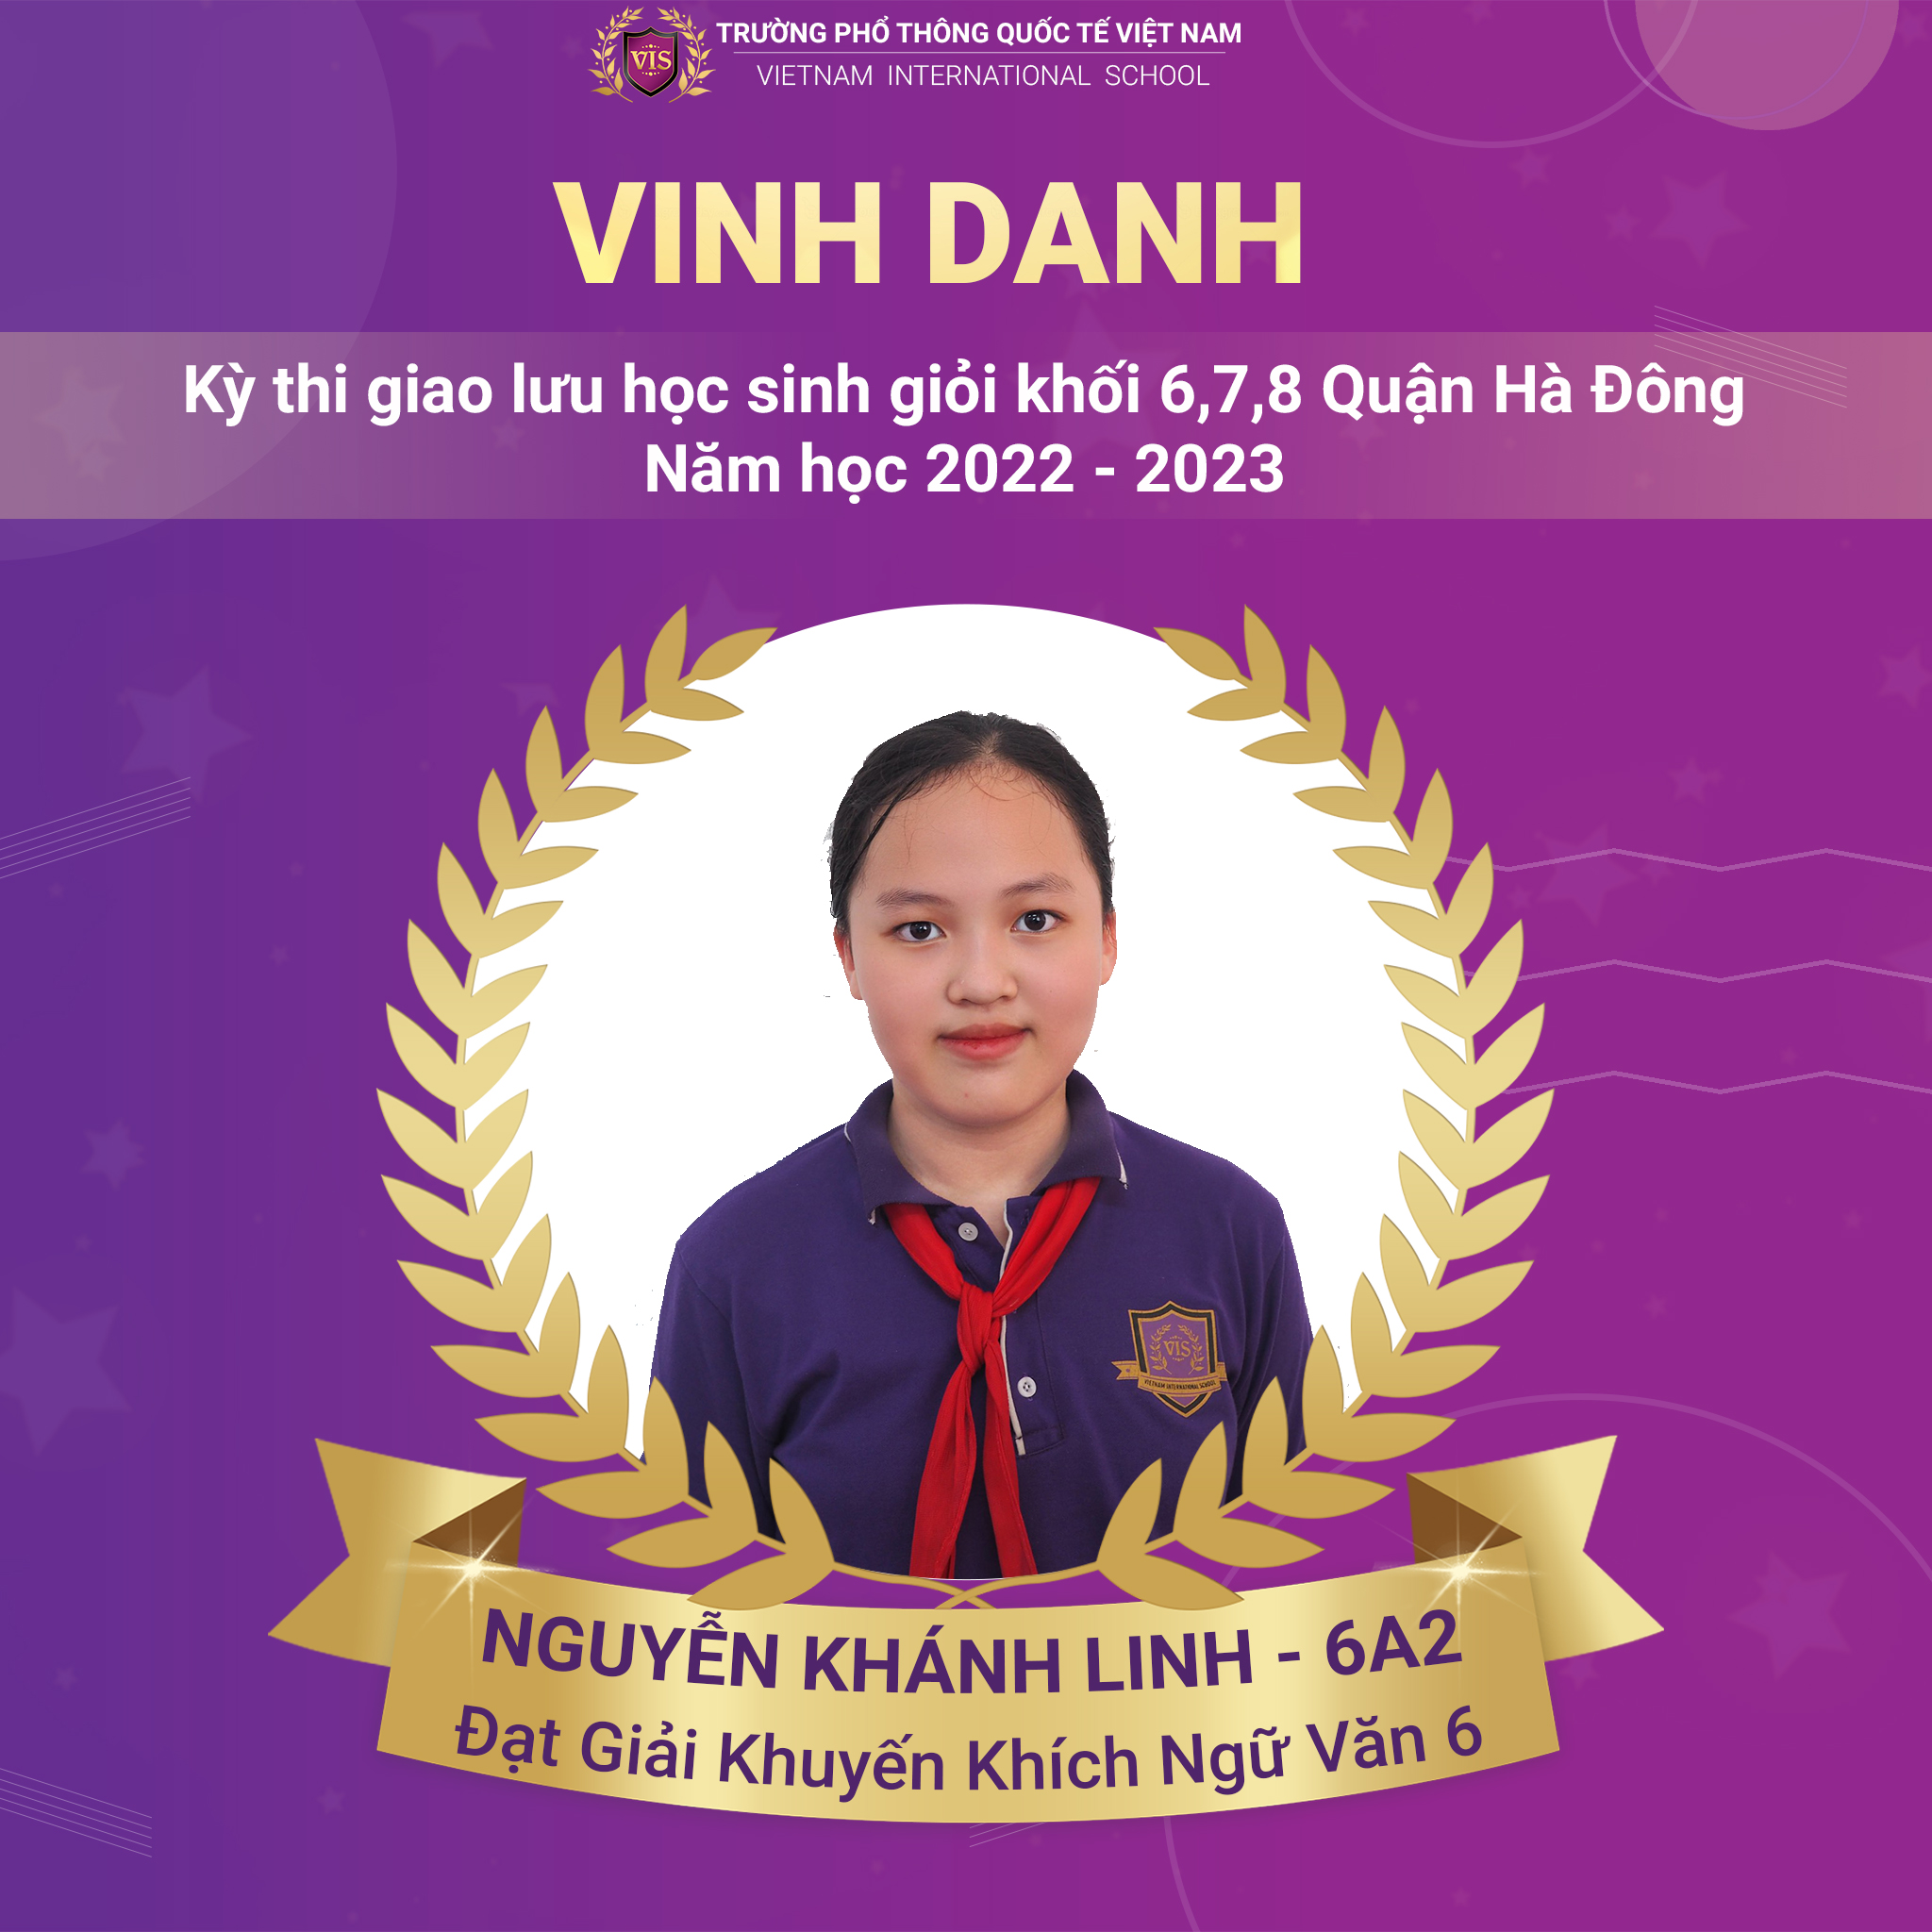 Nguyễn Khánh Linh - Đạt giải trong Kỳ thi Giao lưu HSG cấp Quận